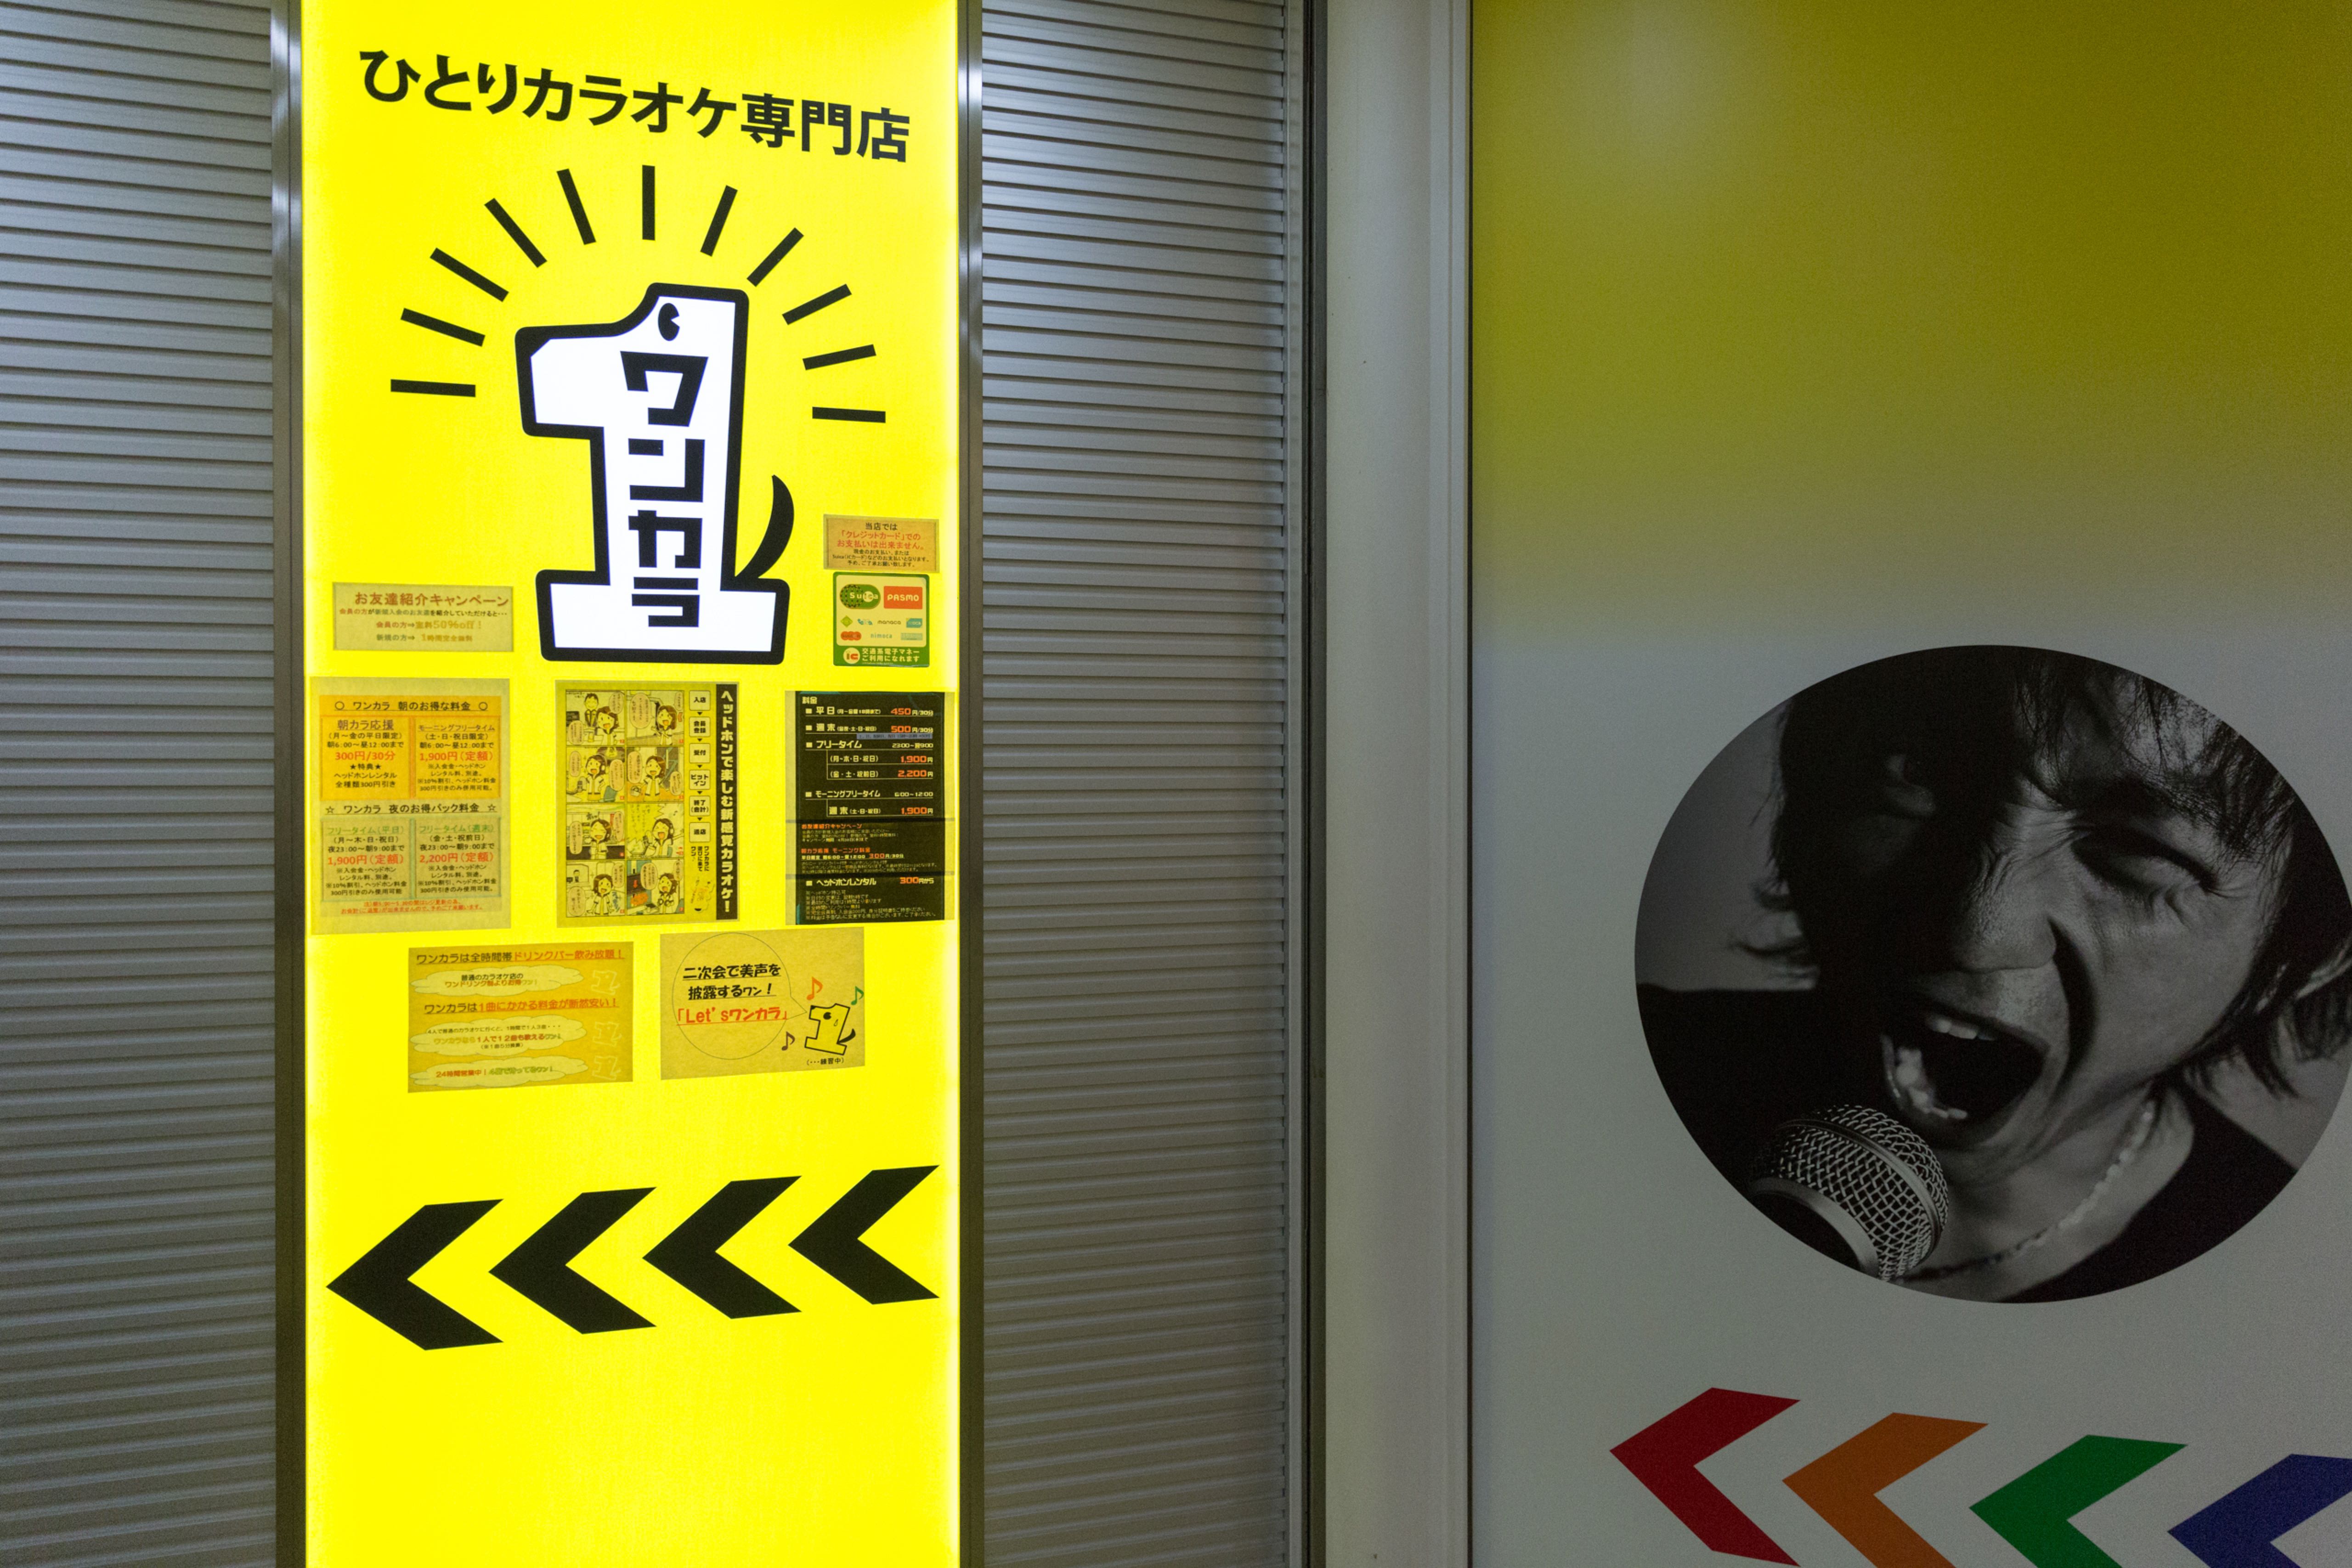 Ultimate Guide to Karaoke in Tokyo, Life in Japan